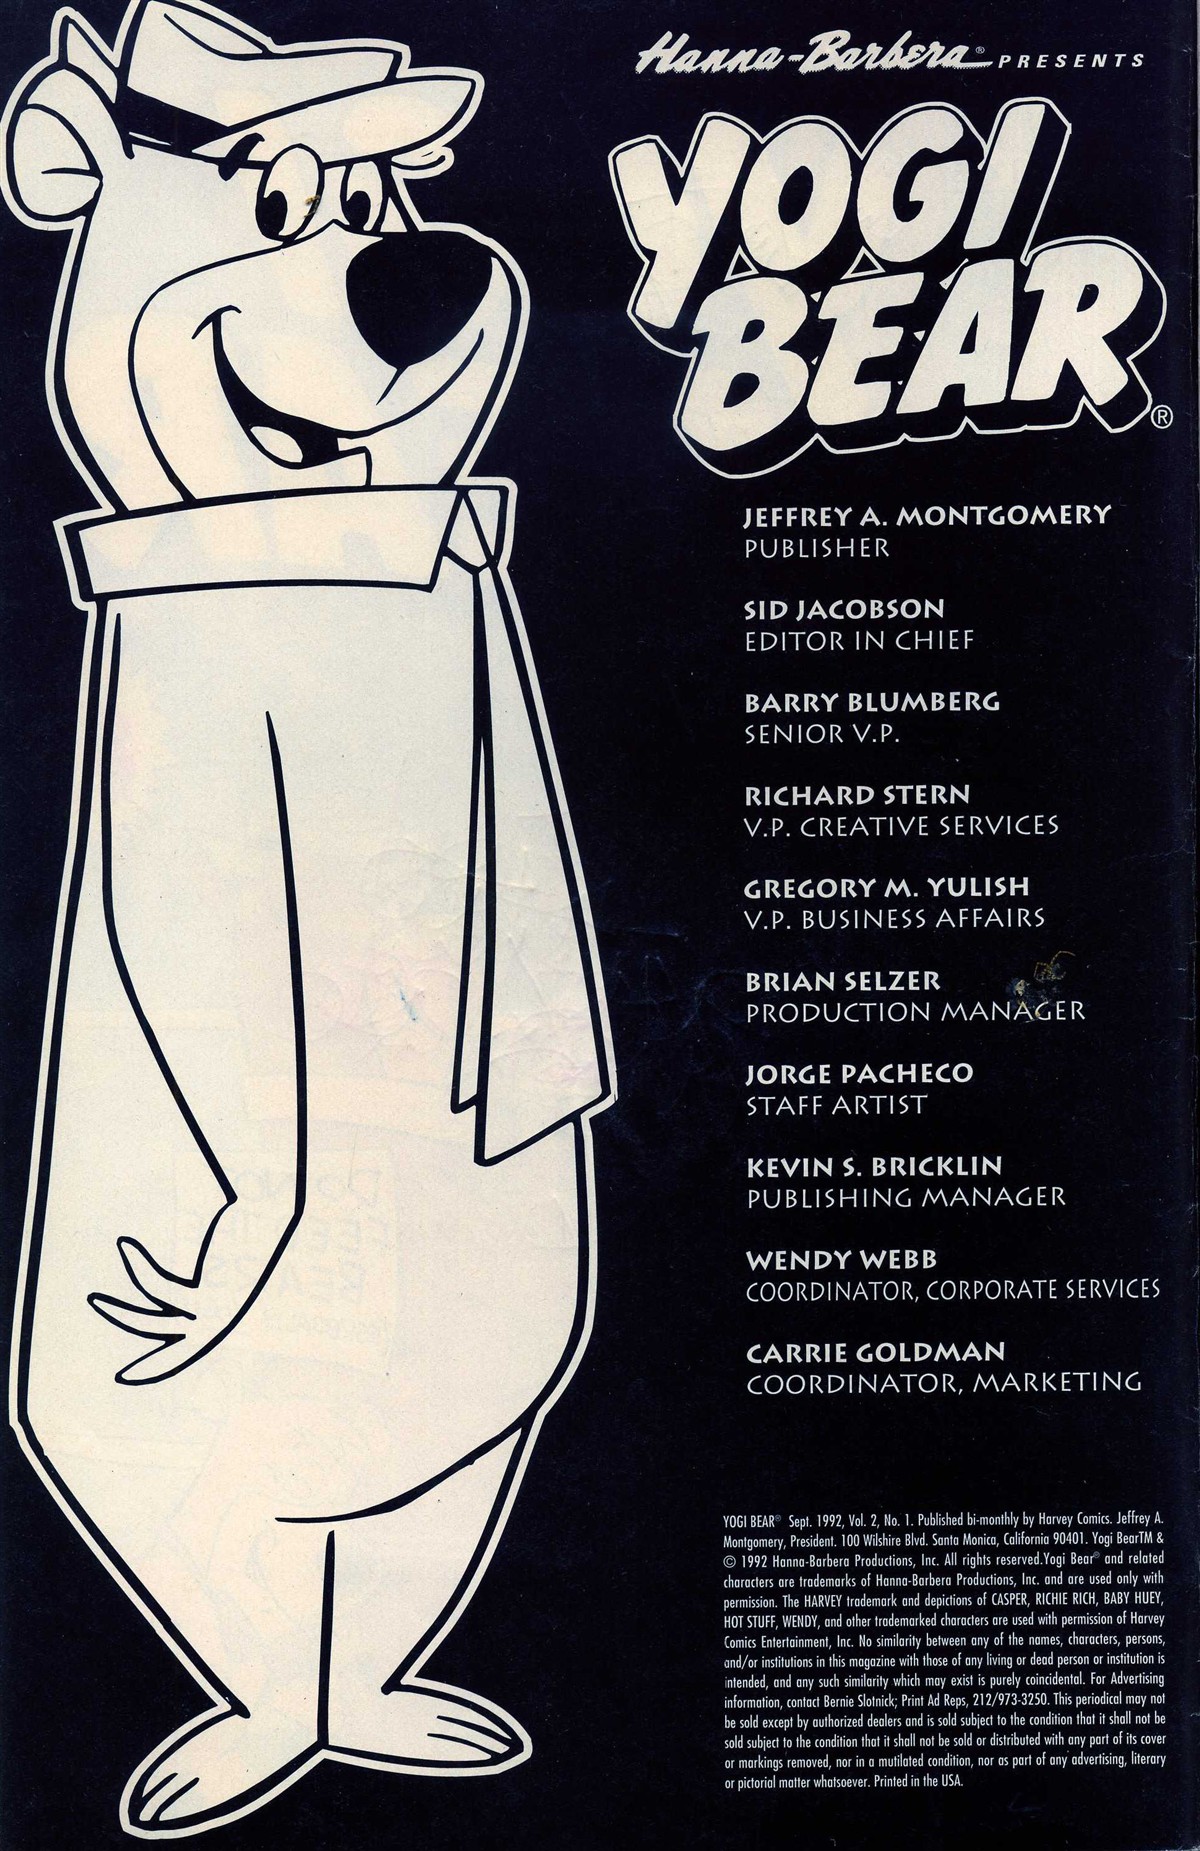 Yogi Bear Porn - Yogi Bear 1992 Issue 1 | Read Yogi Bear 1992 Issue 1 comic online in high  quality. Read Full Comic online for free - Read comics online in high  quality .| READ COMIC ONLINE